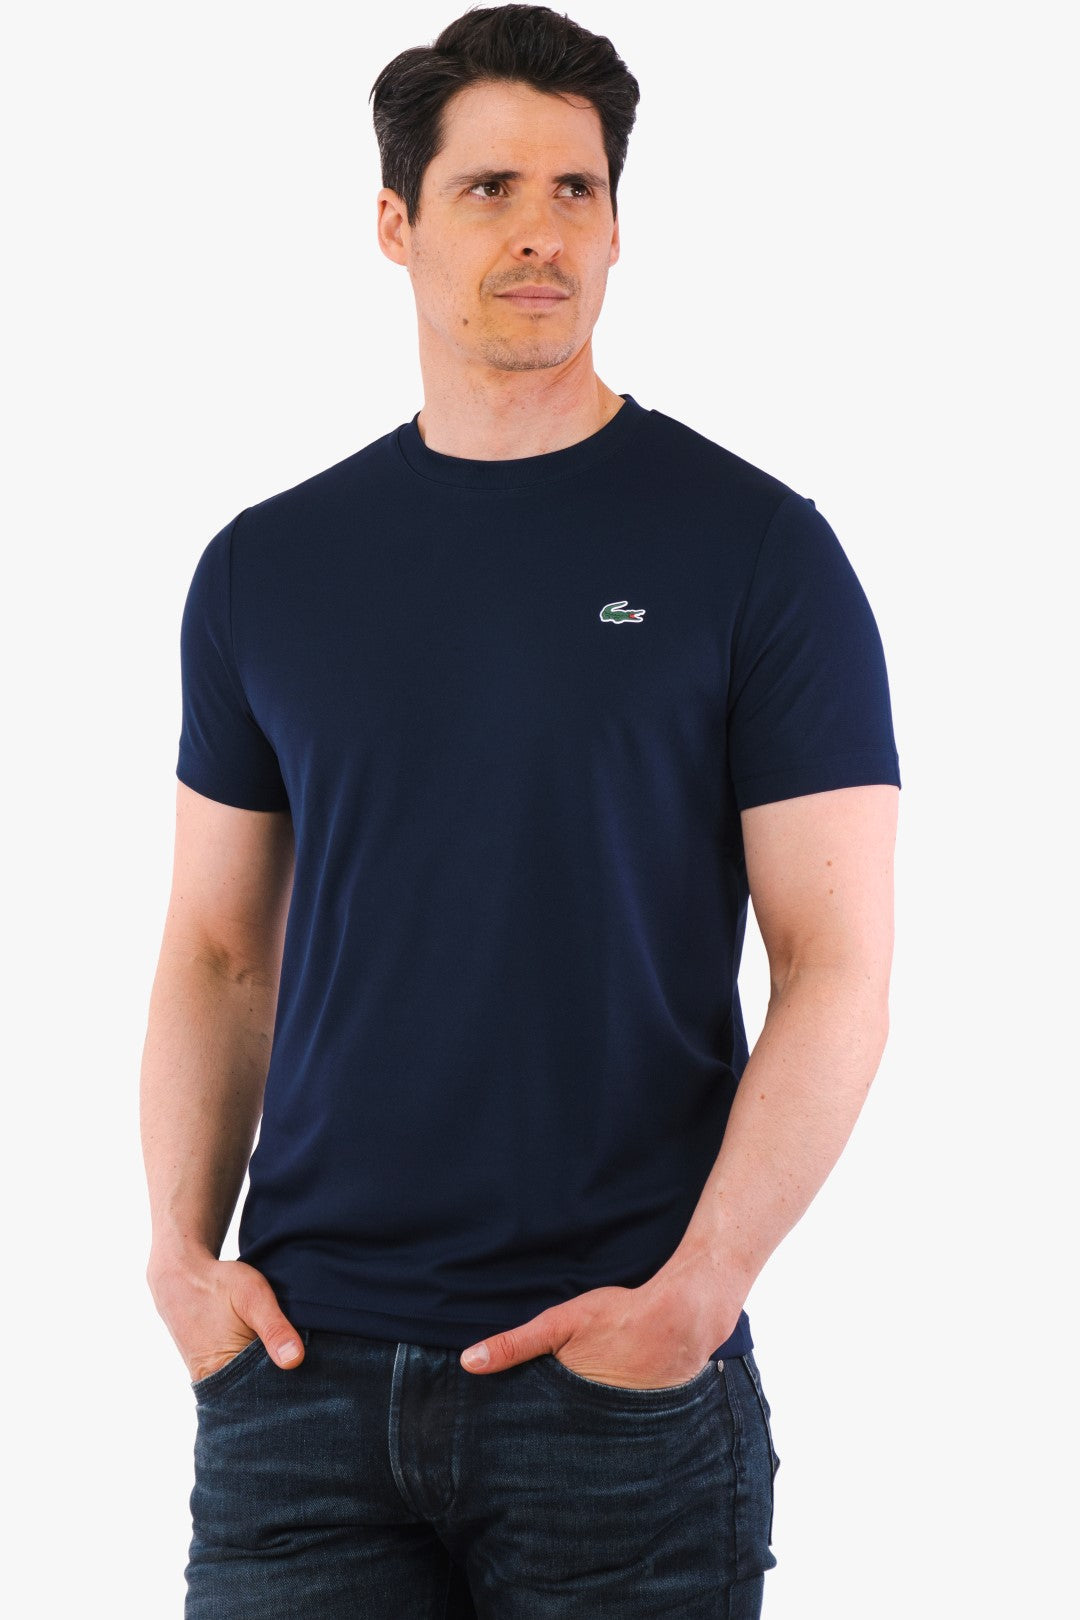 T-Shirt Technique Lacoste De Couleur Marine Homme